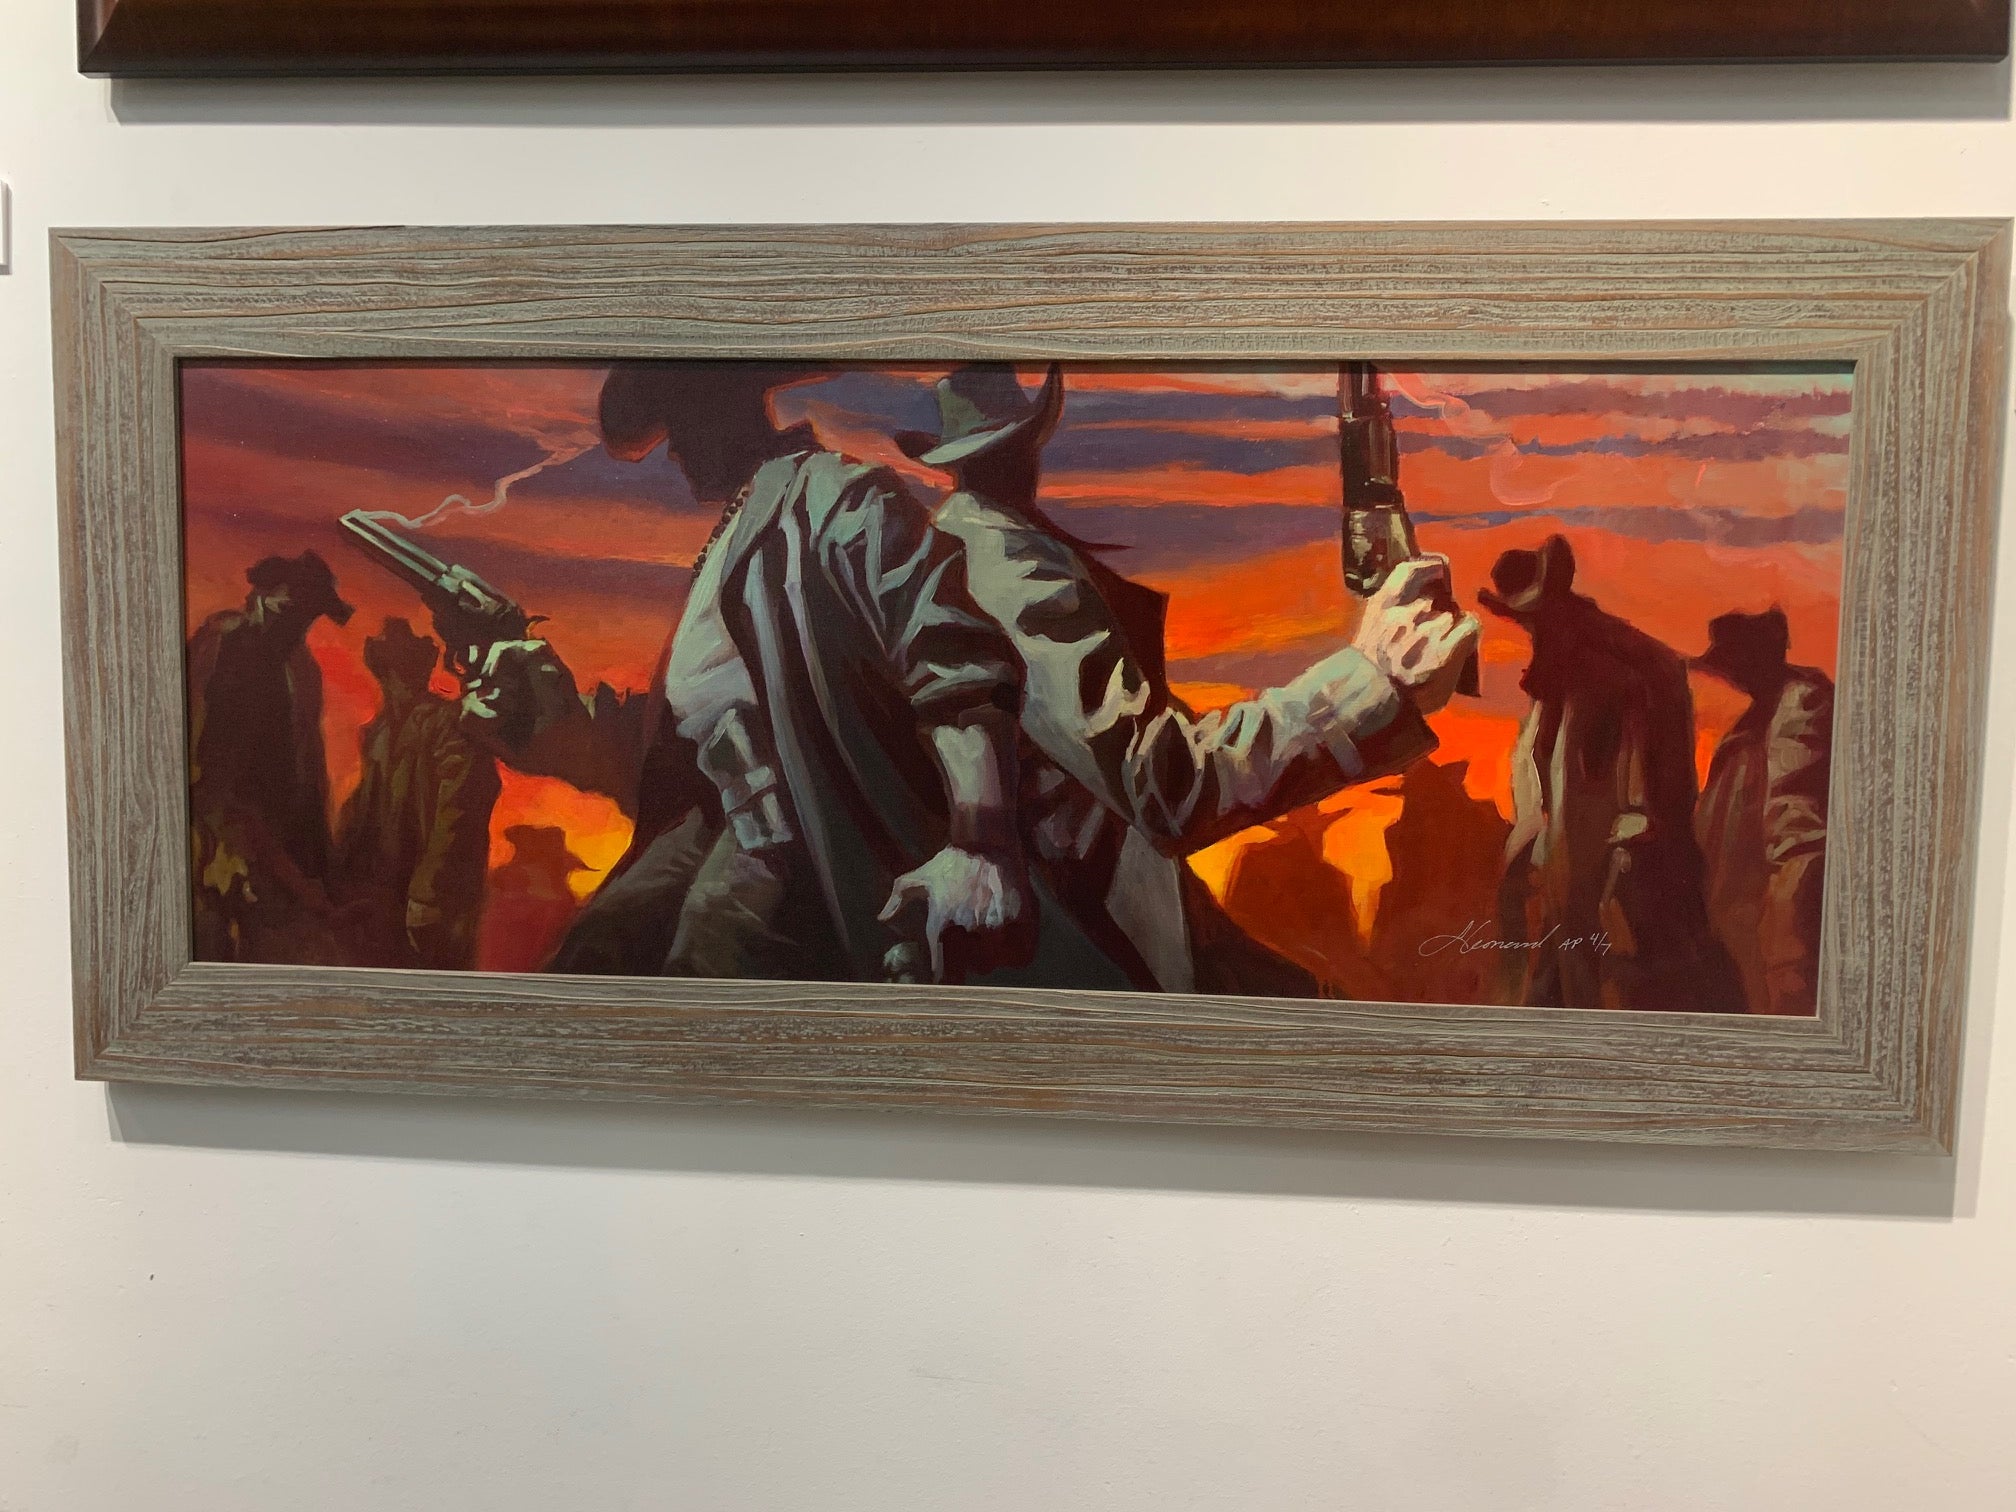 Gabe Leonard's artwork custom framed by Ao5 Gallery in a wooden frame.